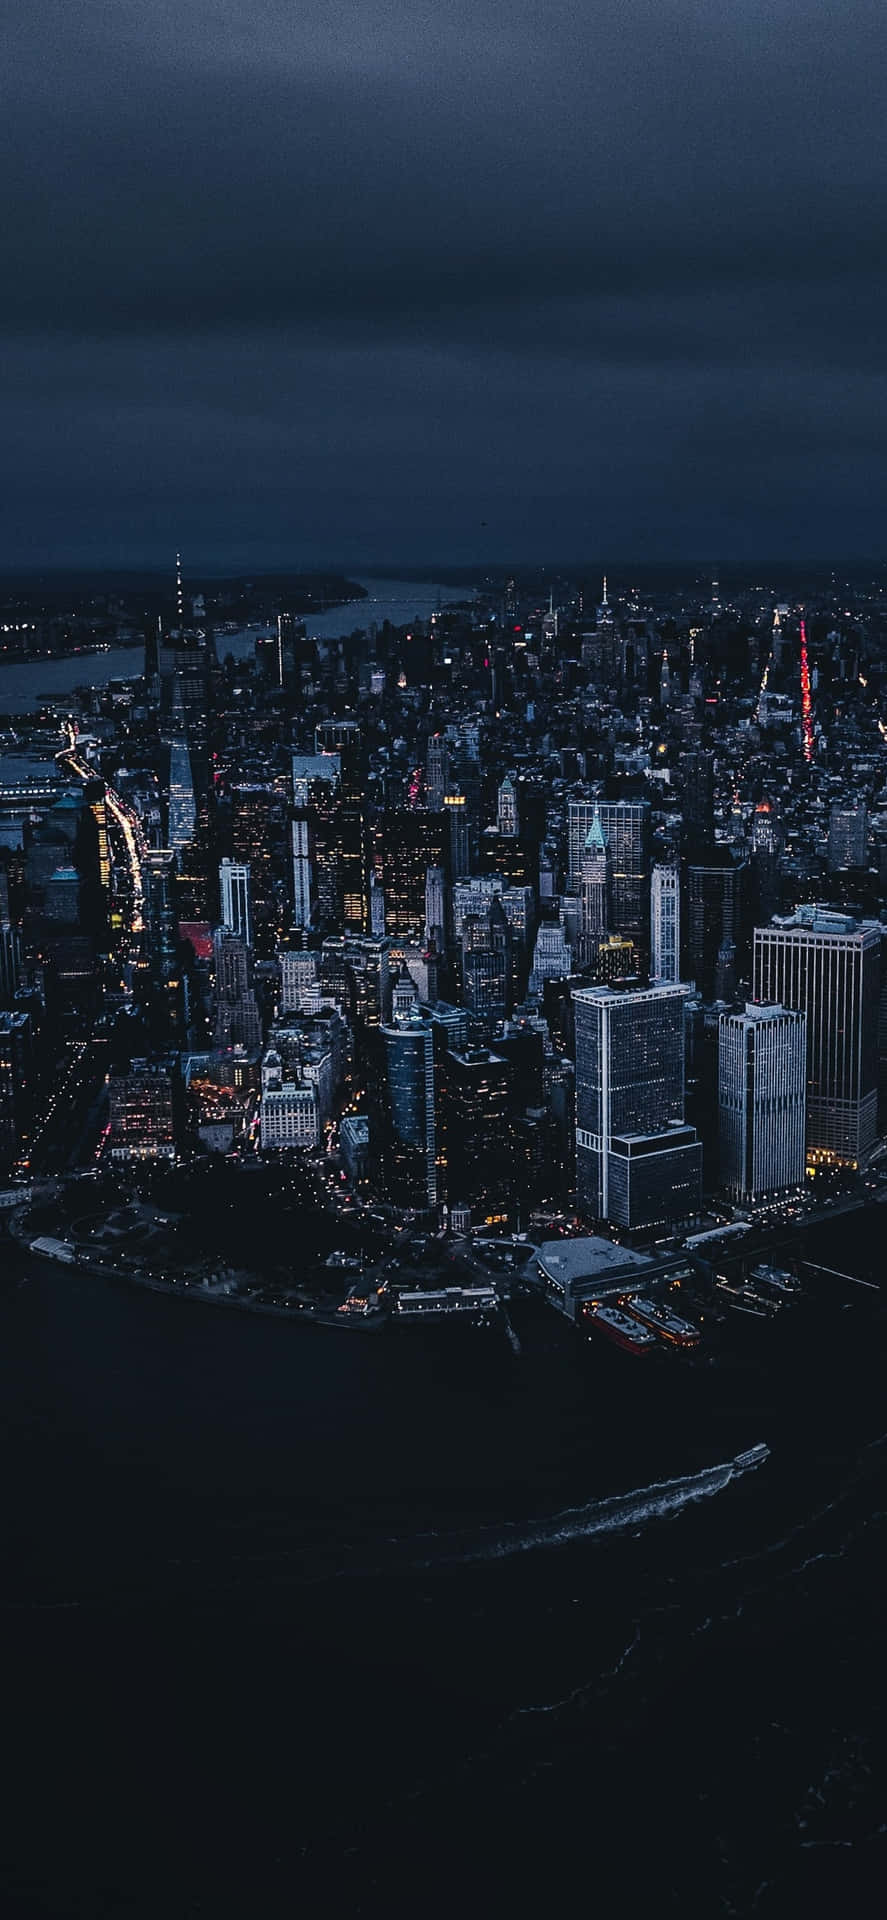 Erhebensie Sich Zu Neuen Höhen Mit Dem Eleganten Und Modernen Iphone Xs Vor Der Atemberaubenden Skyline Von New York.